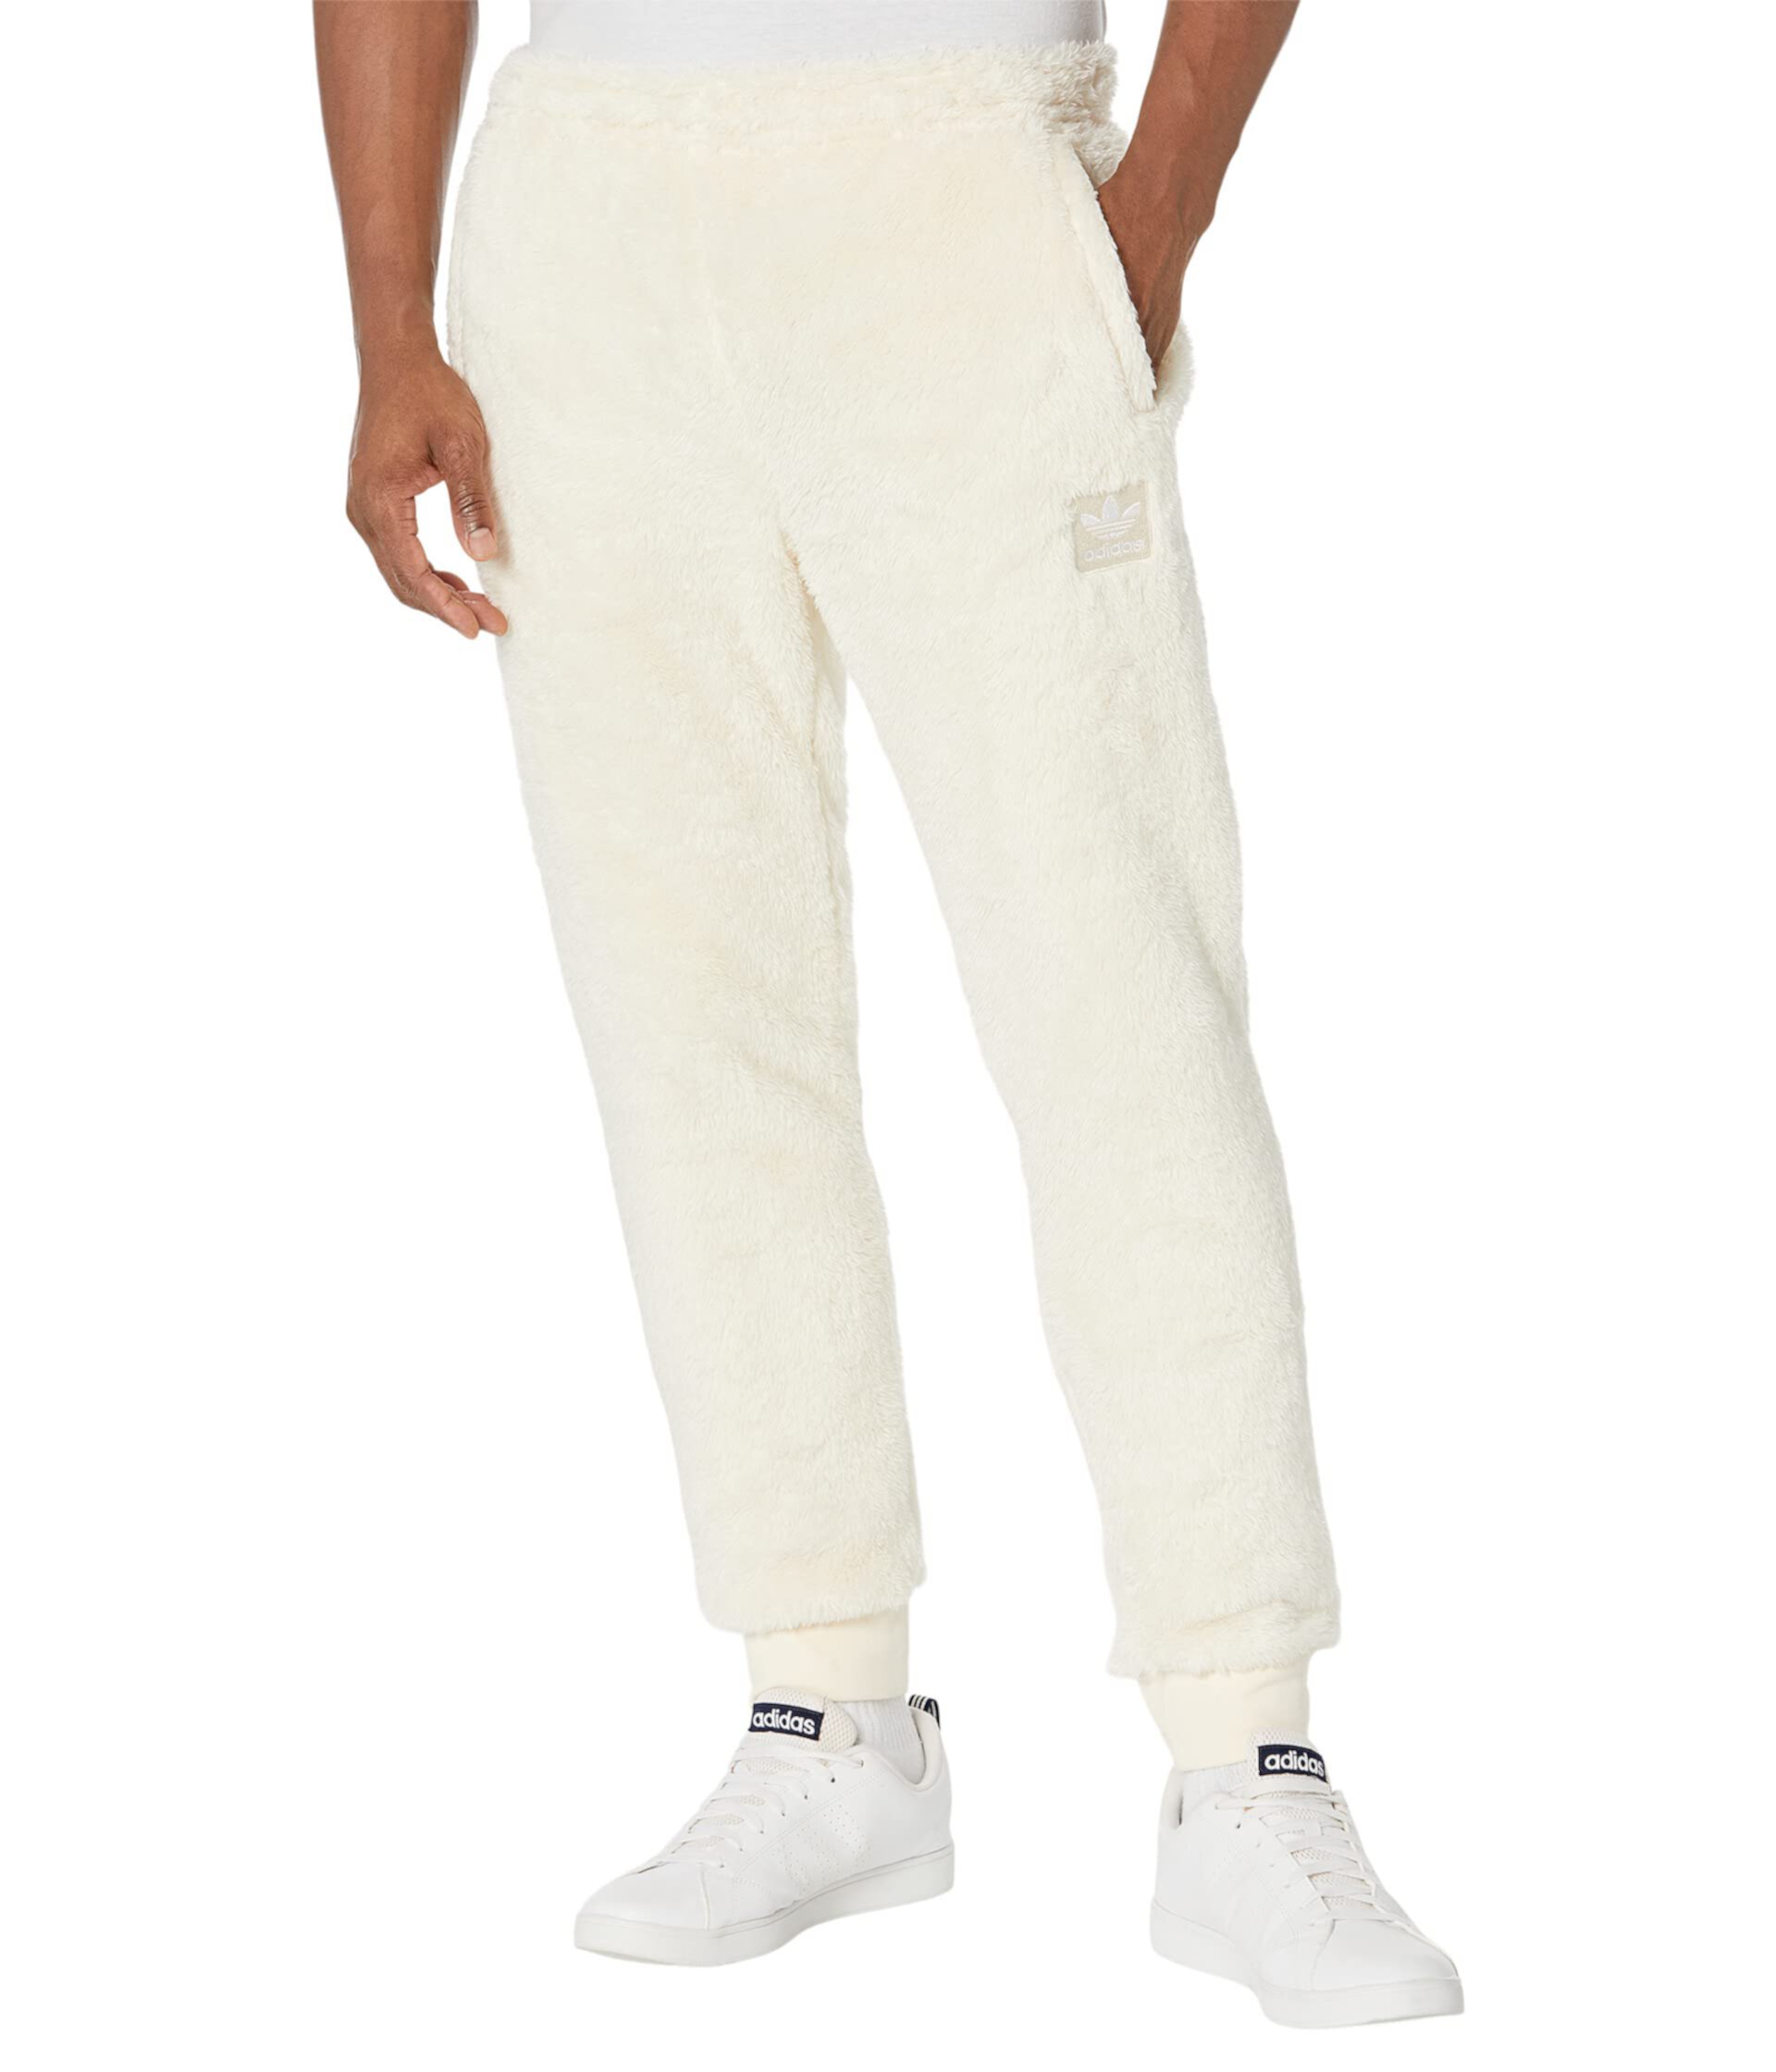 Тренировочные штаны Essentials Fluffy Fleece от Adidas для мужчин Adidas